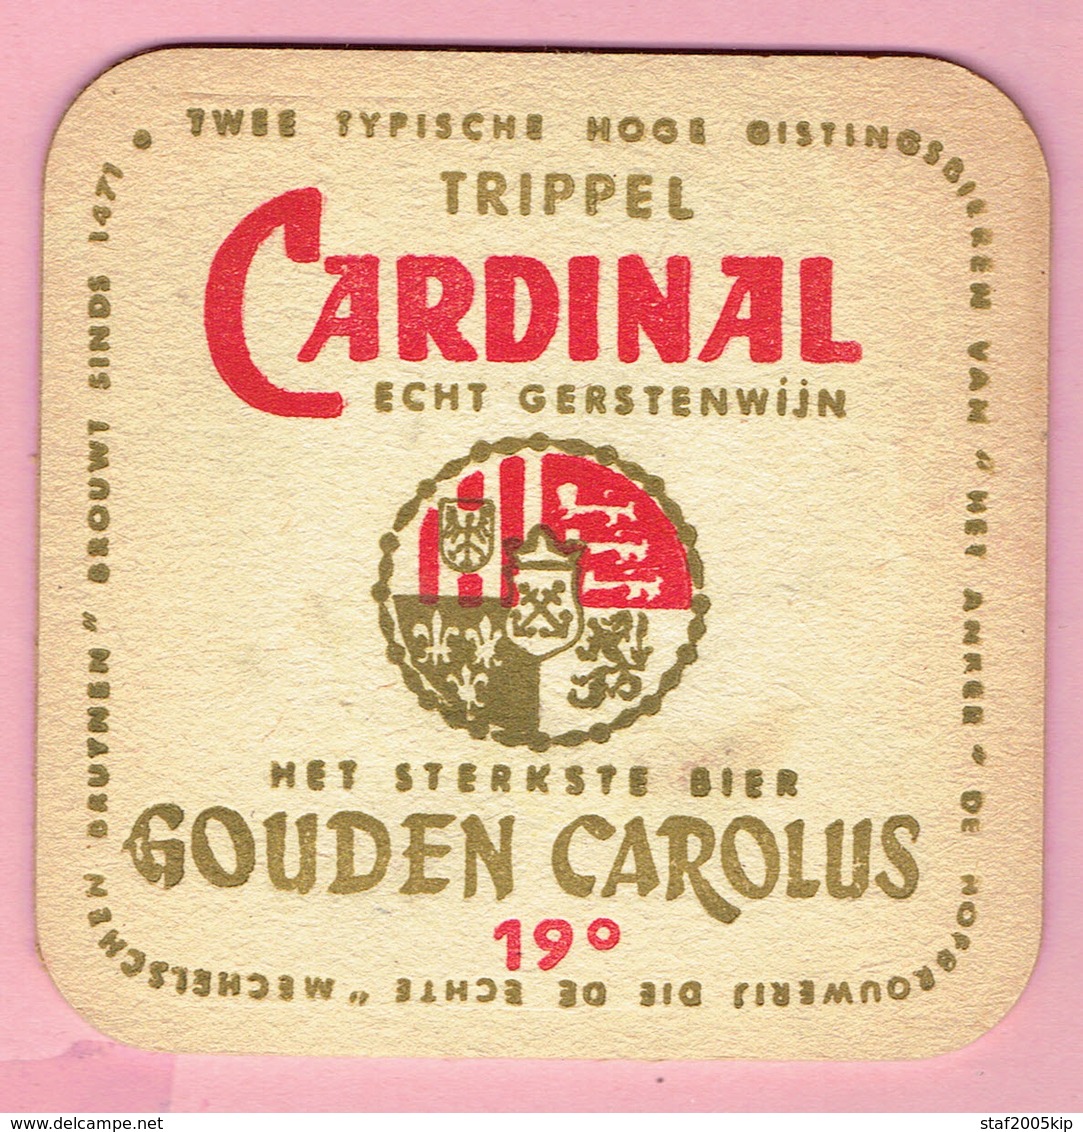 Bierviltje - Trippel Cardinal Echt Gerstenwijn - Gouden Carolus 19° - Portavasos